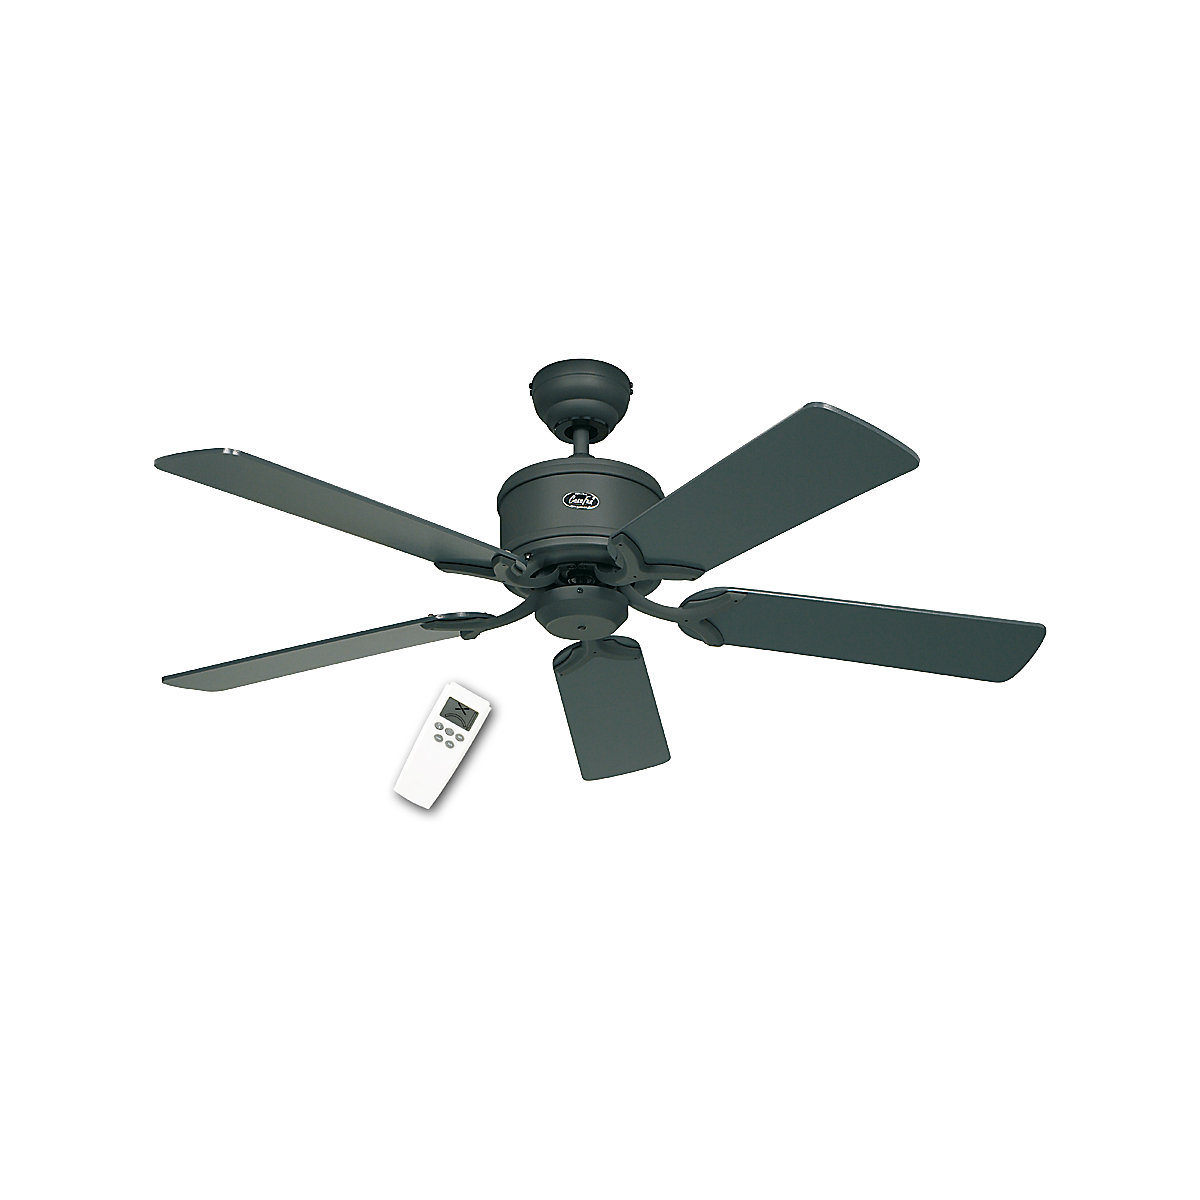 Stropni ventilator ECO ELEMENTS, Ø lopatice rotora 1320 mm, lak u grafit boji / lak u crnoj boji-4